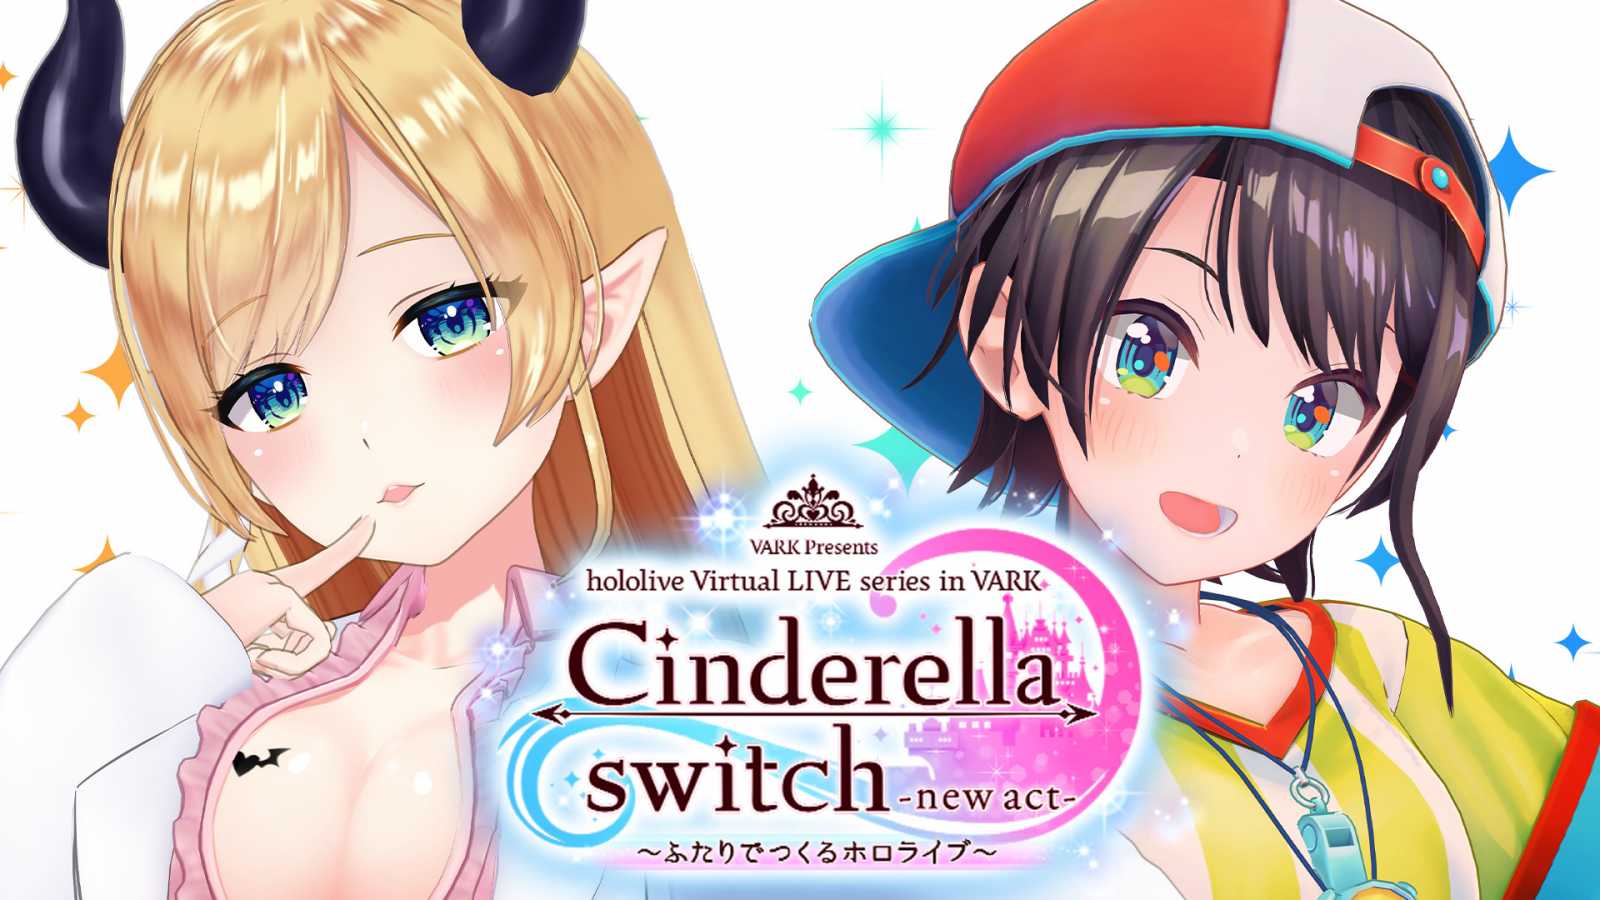 Yuzuki Choco i Oozora Subaru gwiazdami nowego koncertu z serii "Cinderella Switch" © VARK / Cover Corp. All rights reserved.